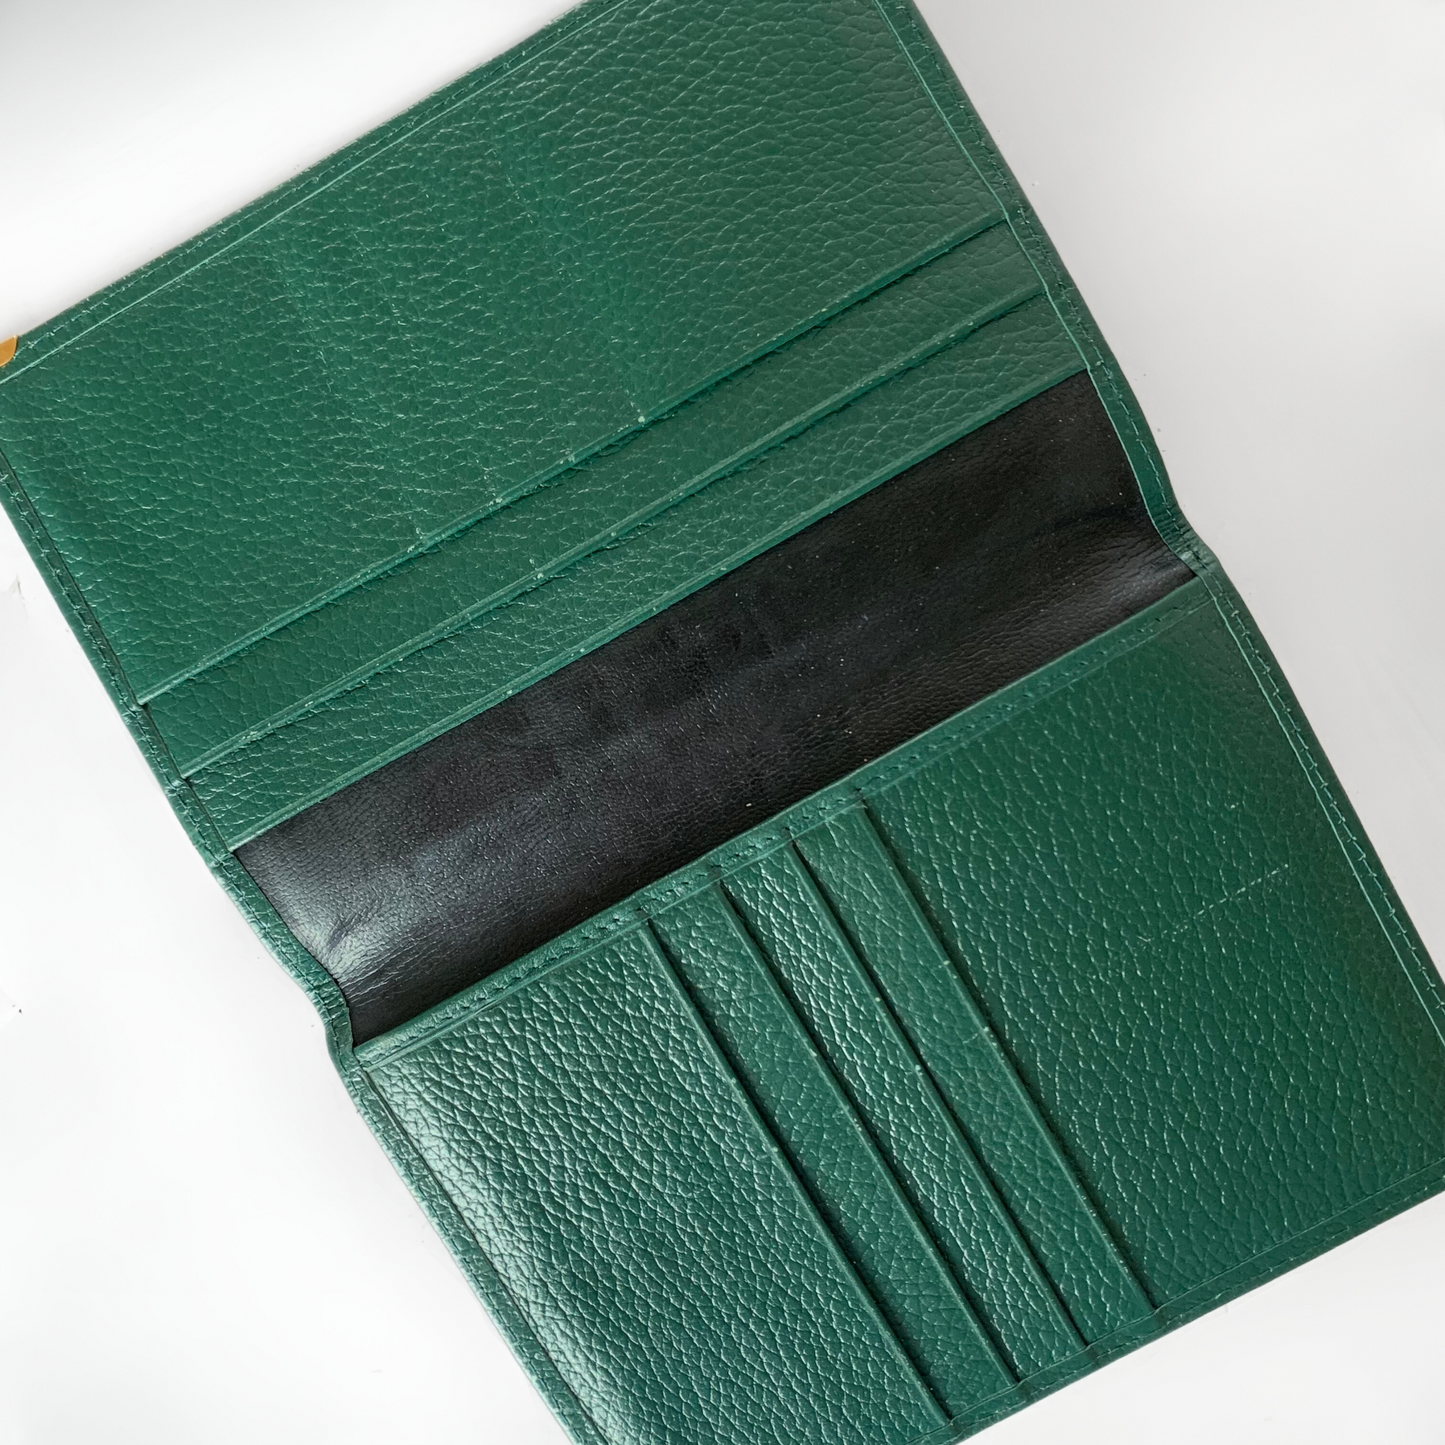 Rolex Rolex Passport Cover in pelle - Custodie per passaporto - Etoile Luxury Vintage